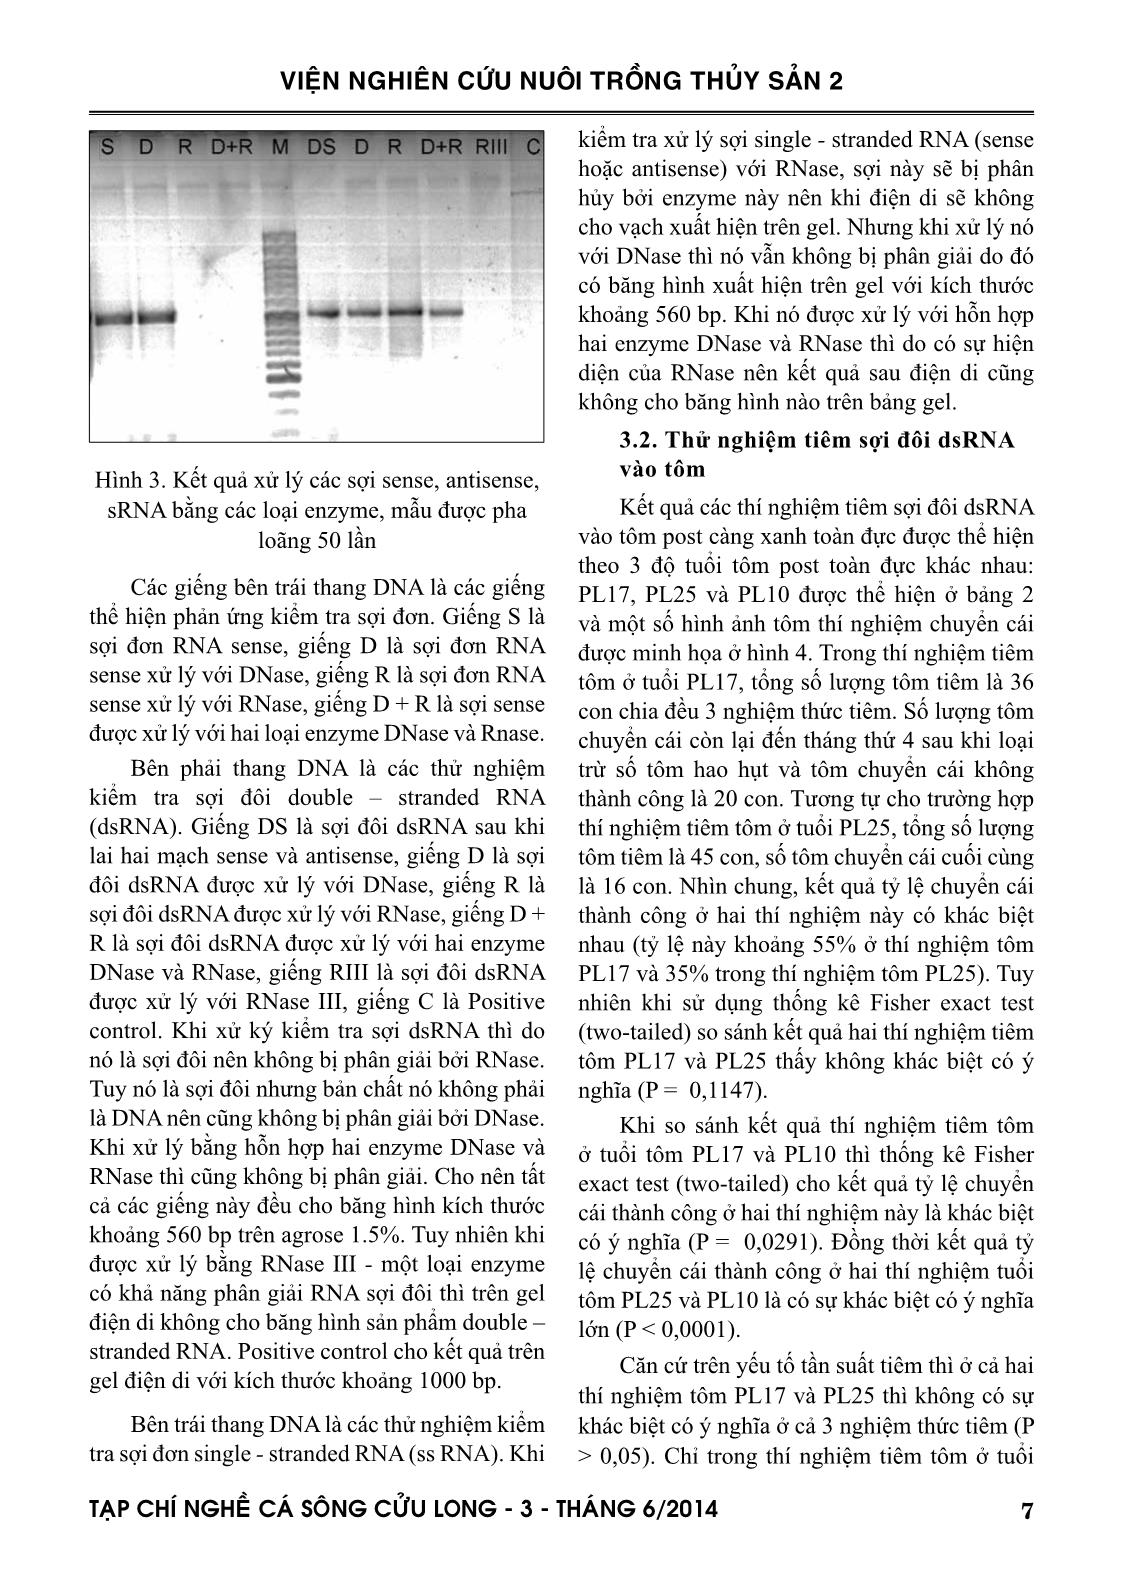 Tạp chí Nghề cá sông Cửu Long - Số 03/2014 trang 7